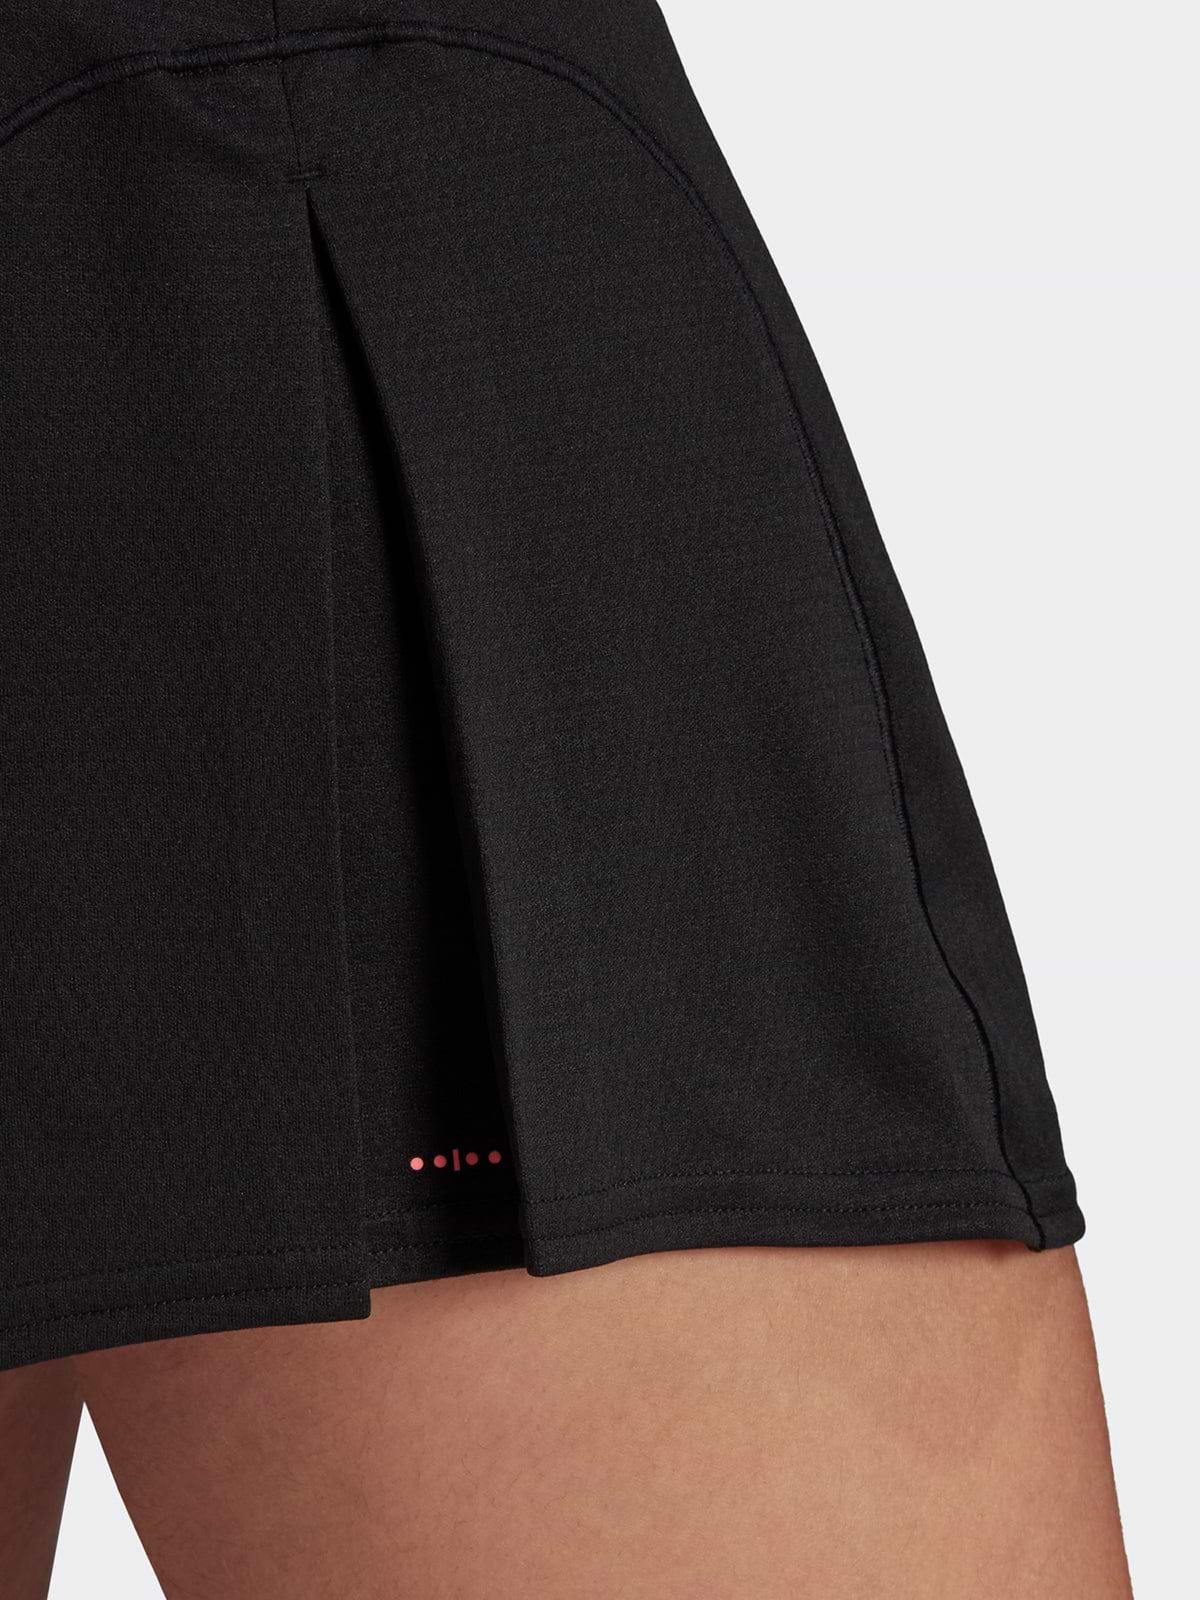 חצאית טניס קצרה HEAT.RDY / נשים- adidas performance|אדידס פרפורמנס